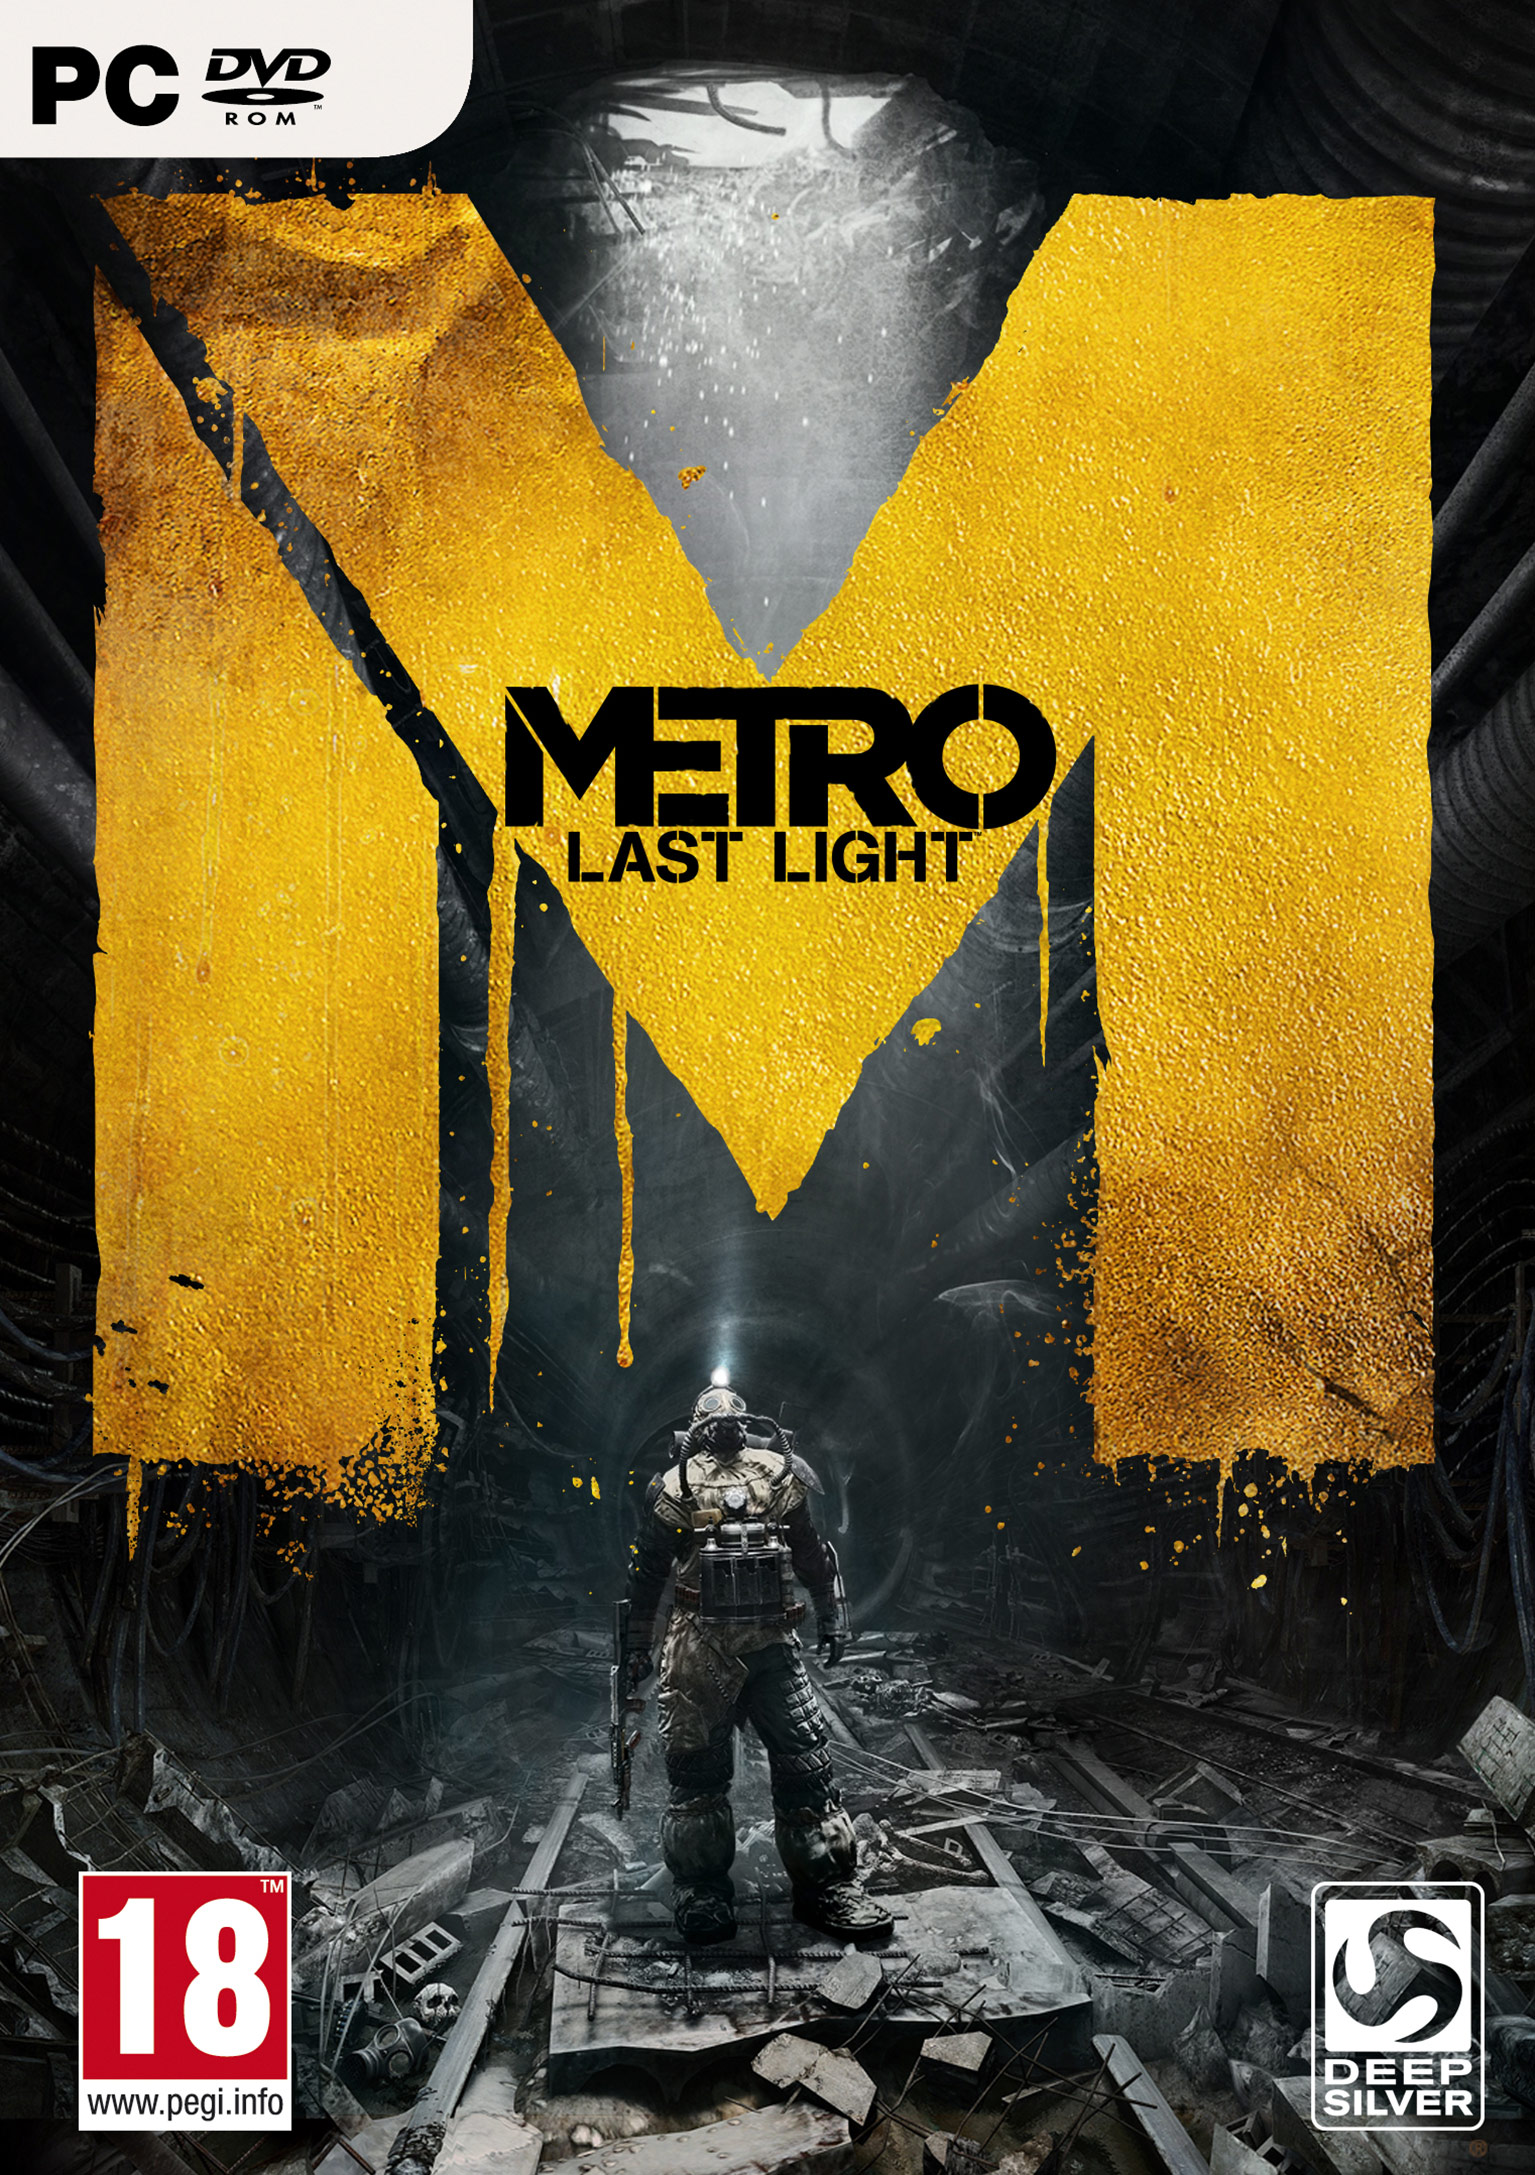 METRO: Last Light - predn DVD obal 2